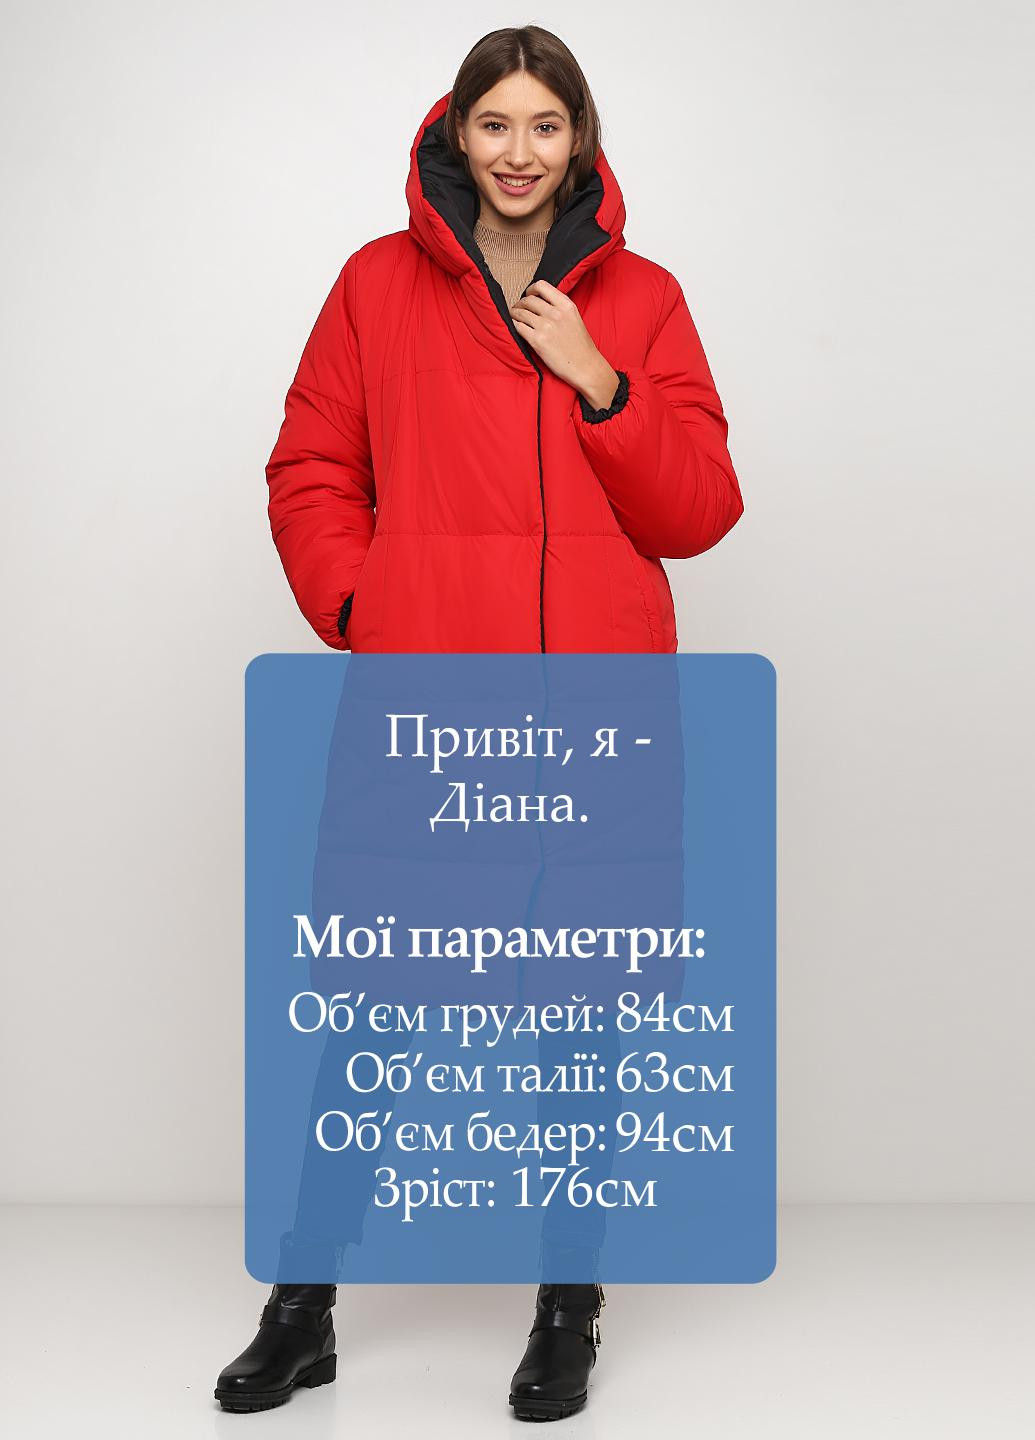 Красная зимняя куртка двусторонняя LORA ANGEL